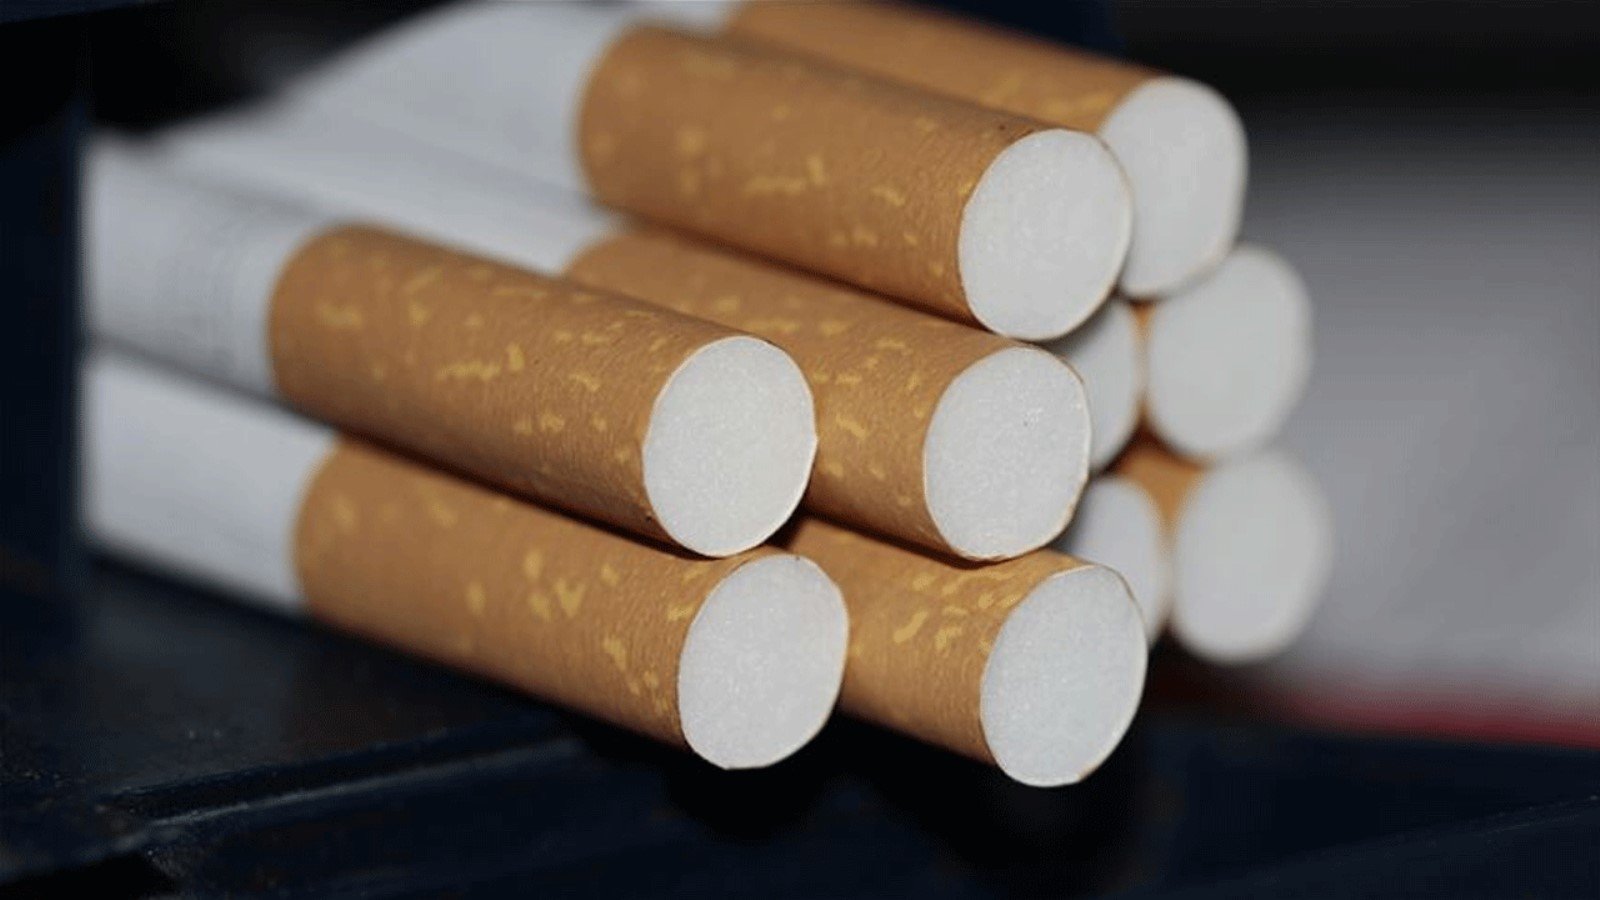 Sigara ve tütün ürünlerine ÖTV ayarı: Yüzde 6 düştü, 6 ay ötelendi